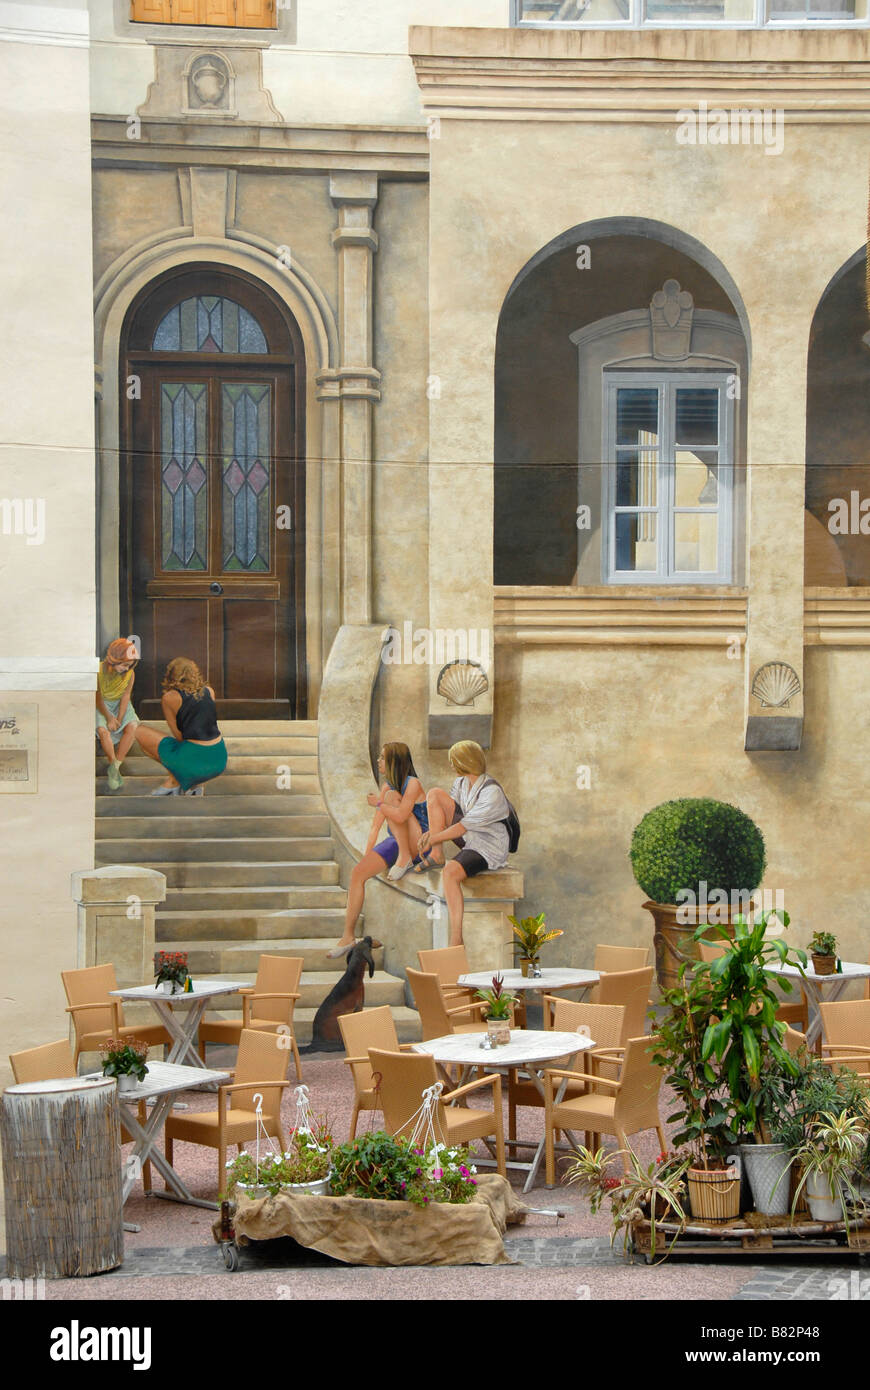 Restaurant Garten, realistische Malerei am Haus Wand, Montpellier, Frankreich, Europa Stockfoto